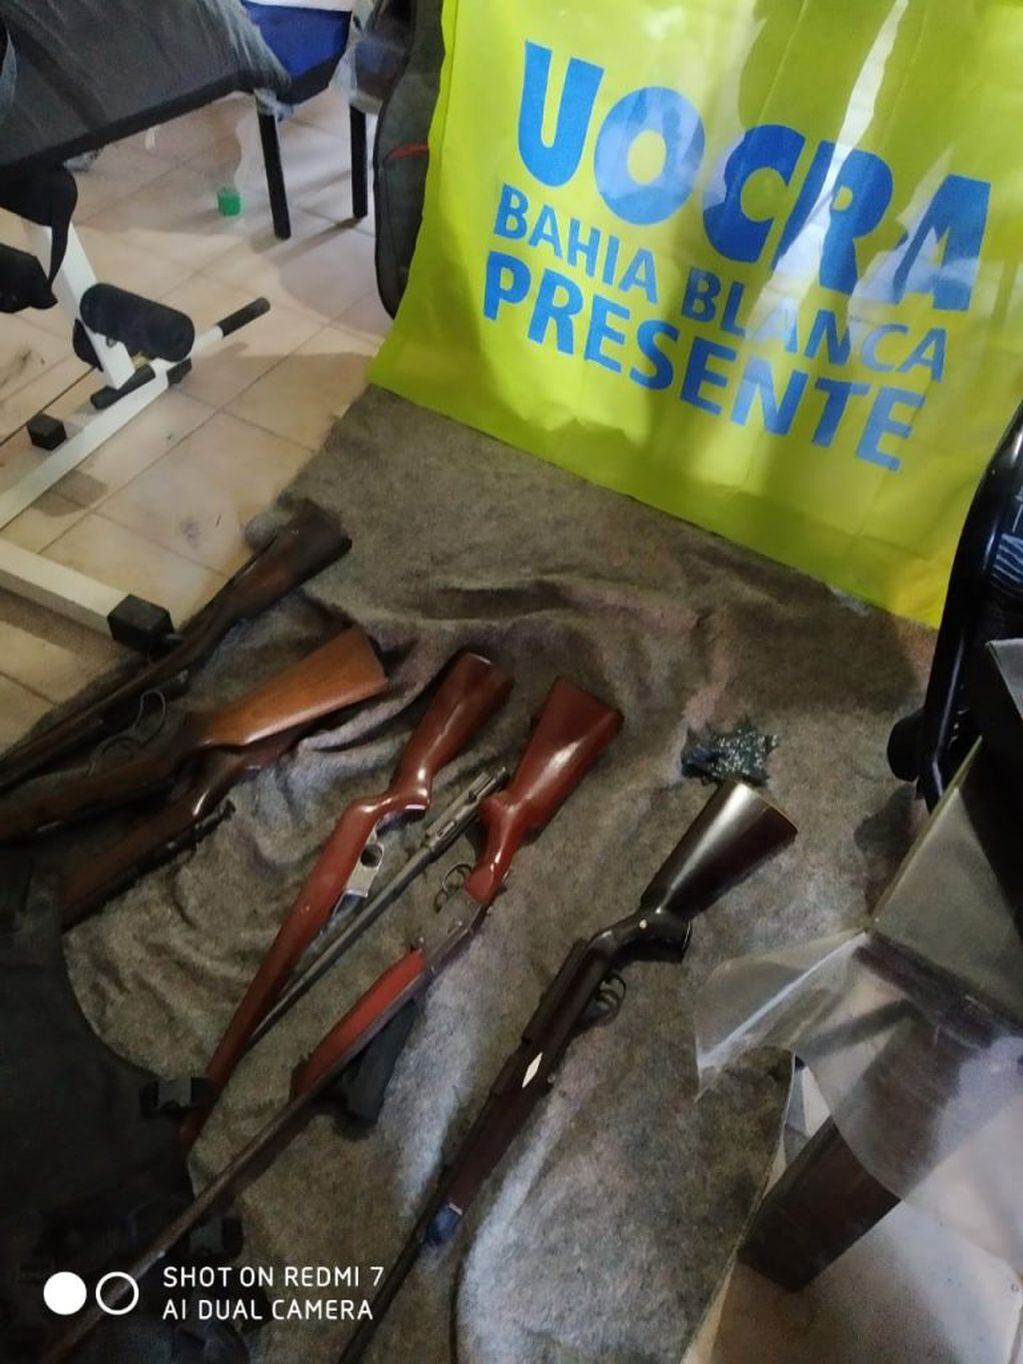 Armas encontradas en la vivienda de los acusados